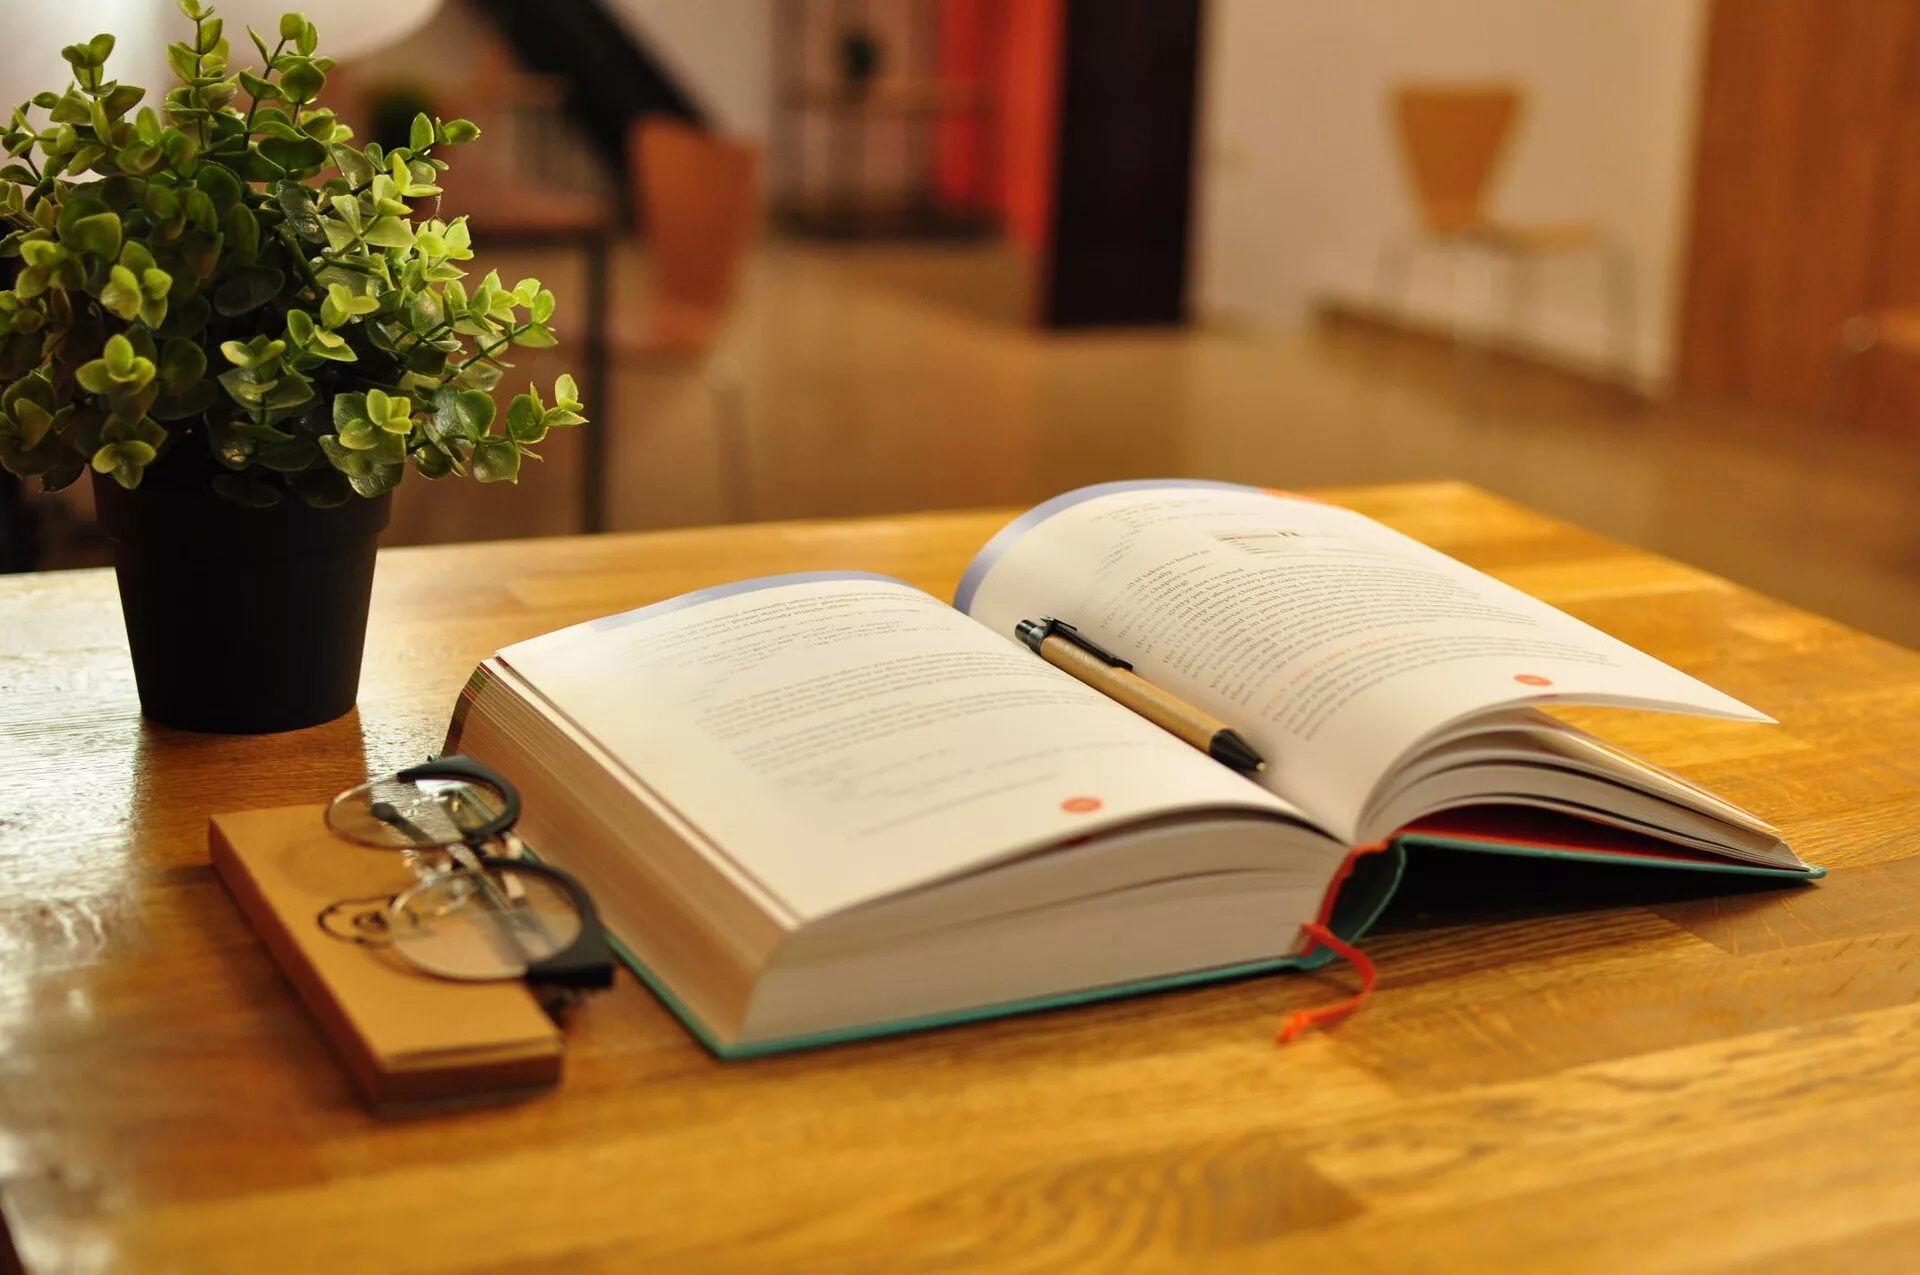 На столе лежит книга которая отражается. Стол-книжка. Стол «книга». Раскрытая книга на столе. Книга лежит на столе.